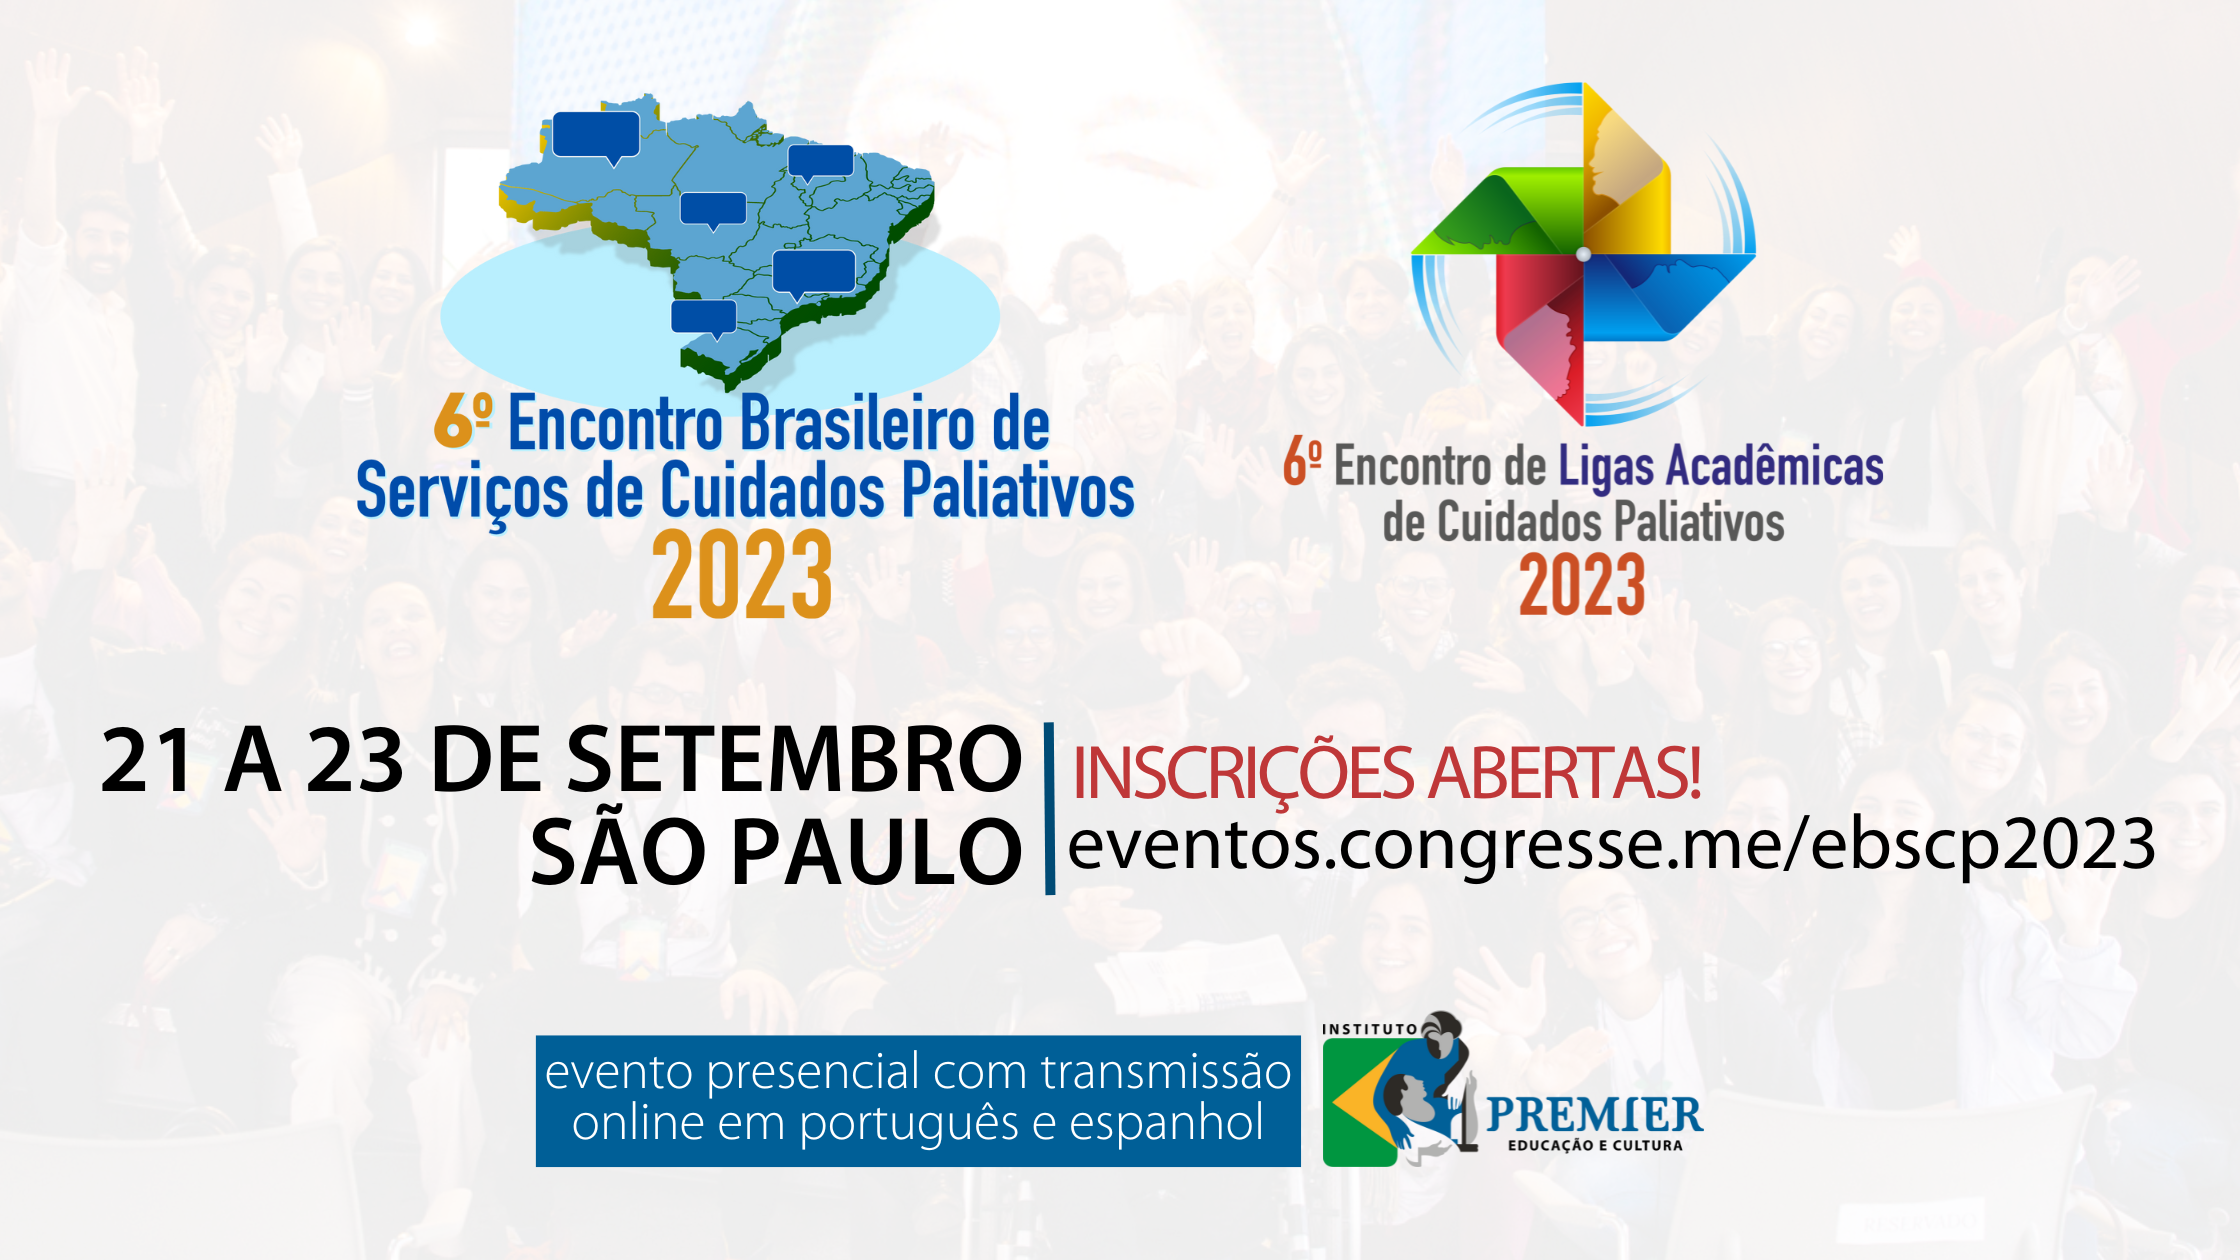 6° Encontro Brasileiro de Serviços de Cuidados Paliativos & 6° Encontro de Ligas Acadêmicas de Cuidados Paliativos